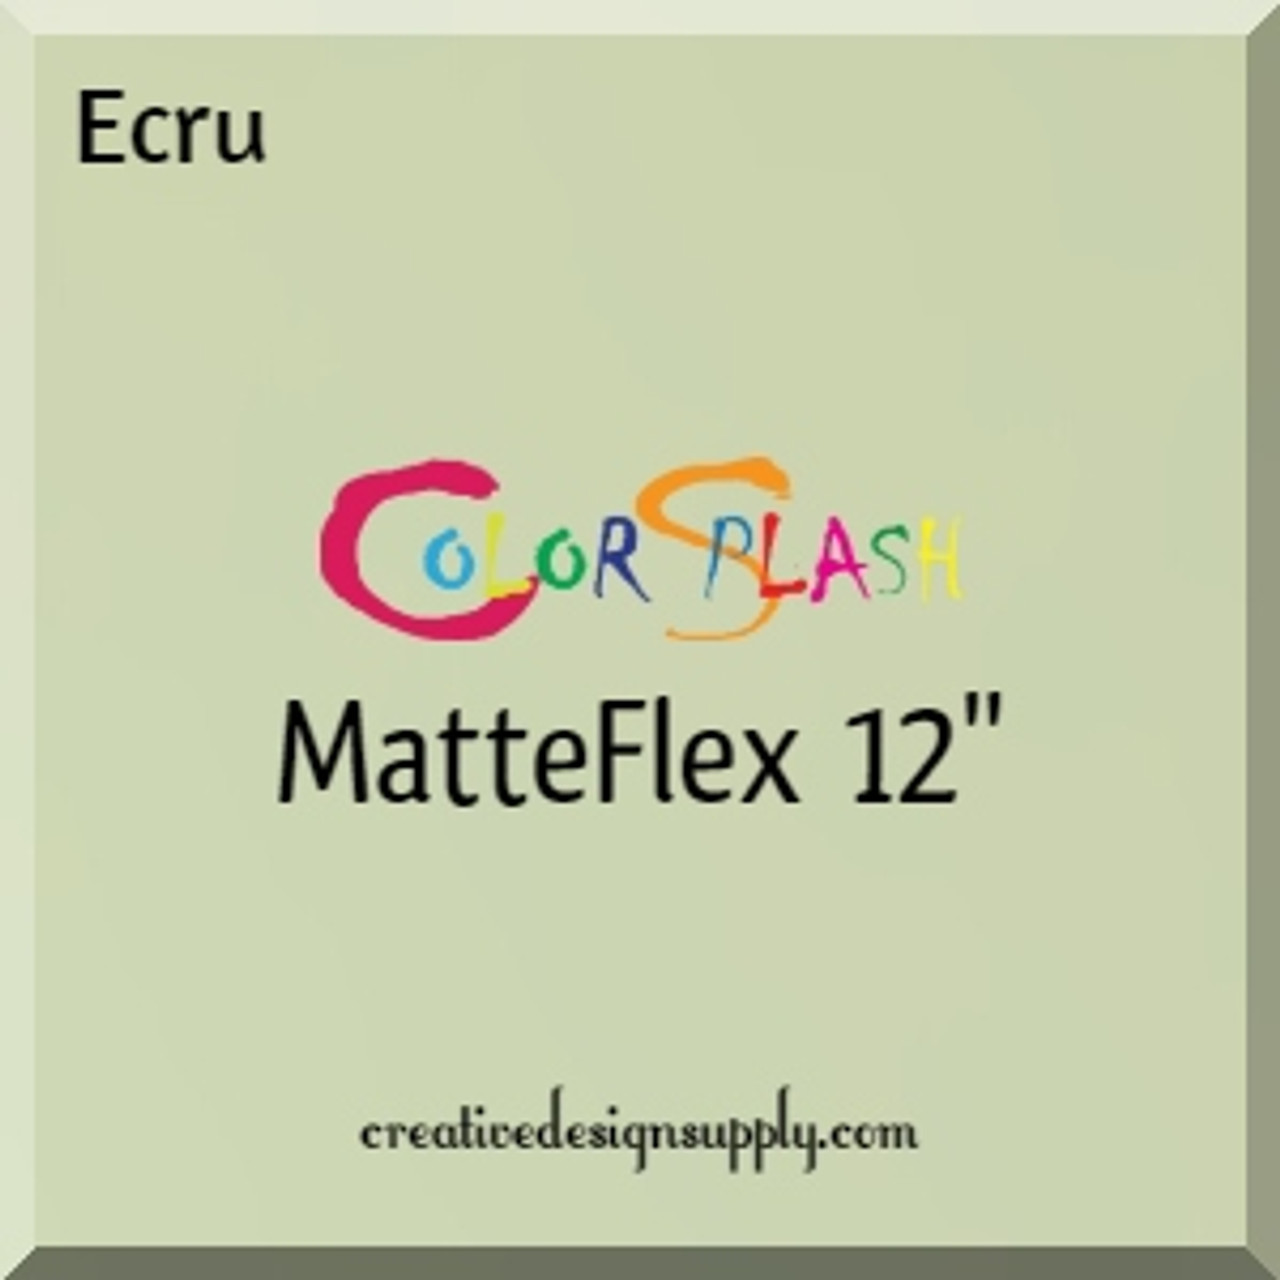 ColorSplash MatteFlex 12" | Ecru